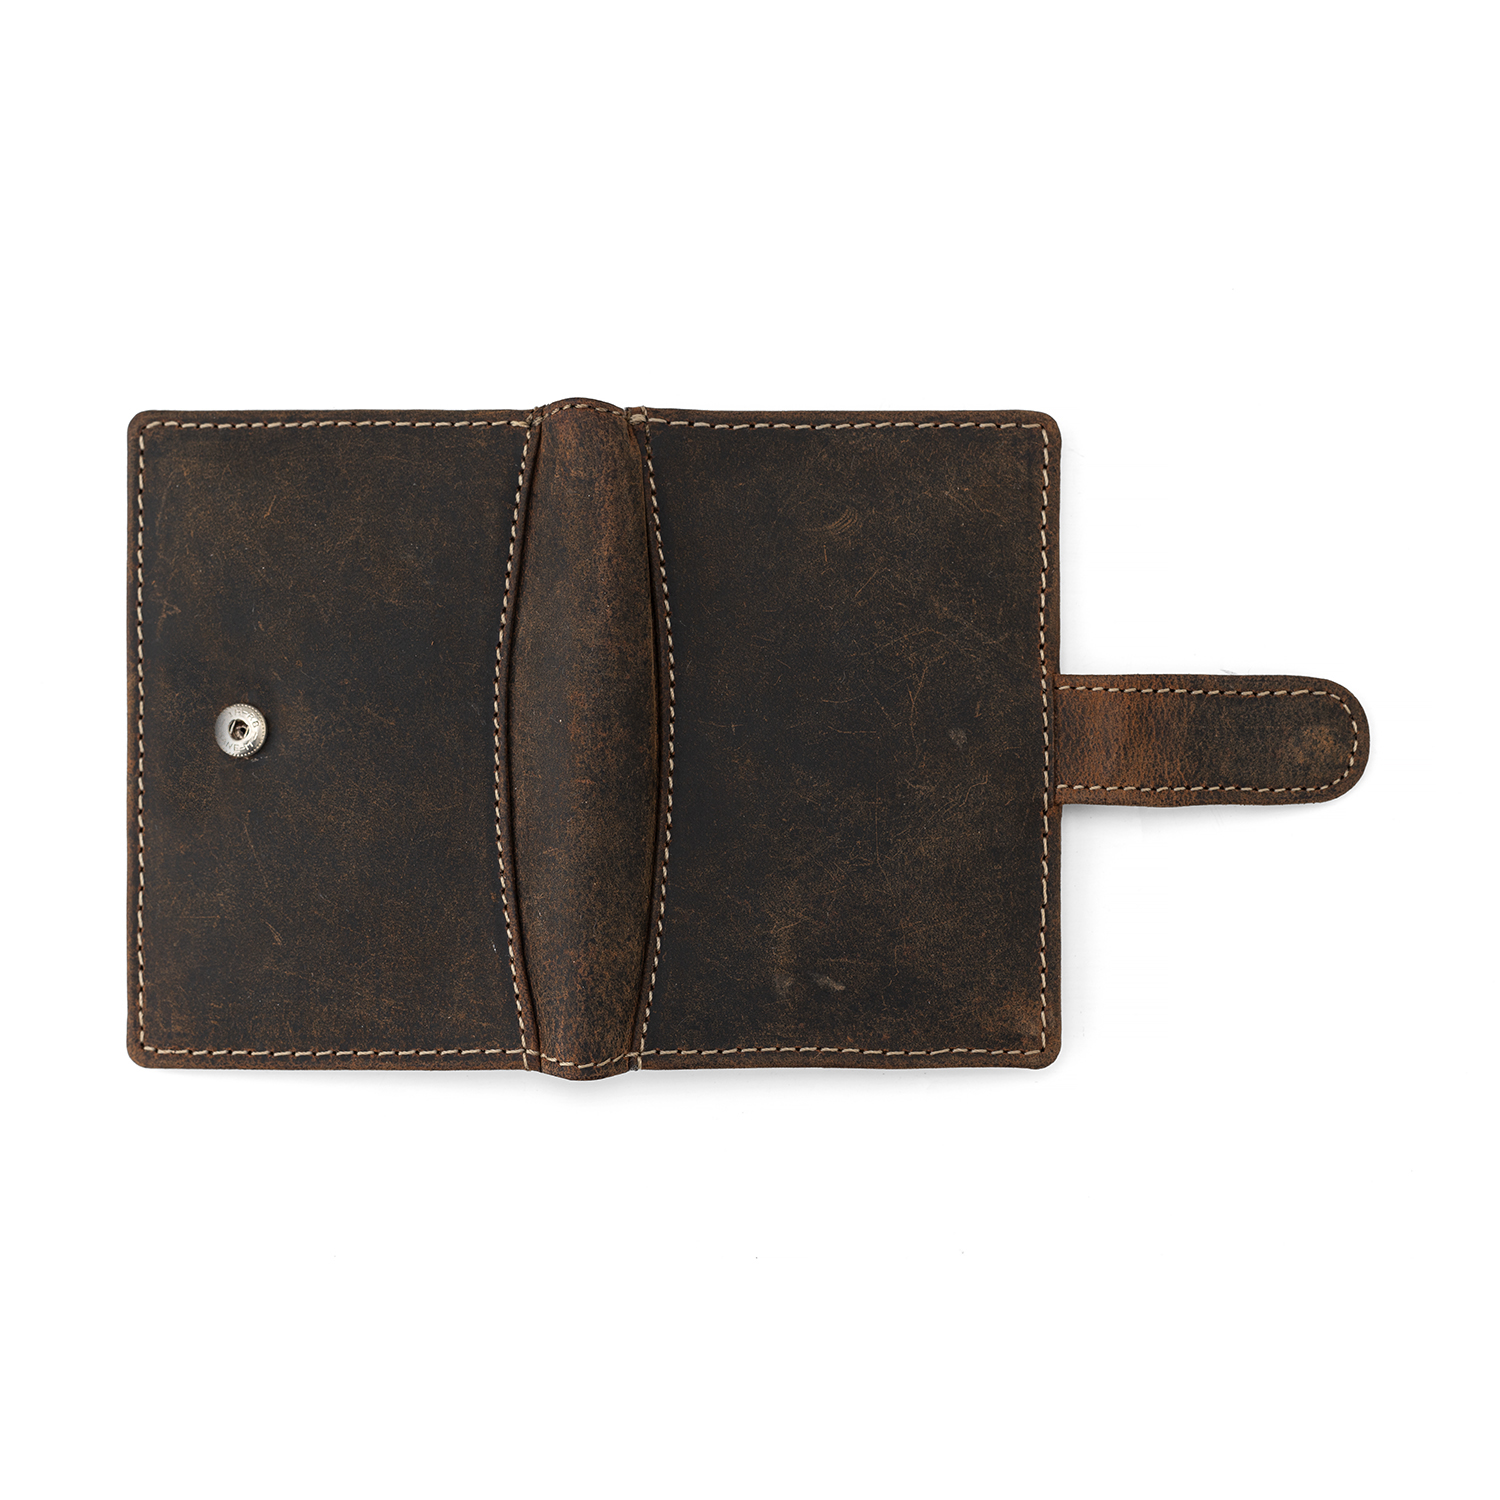 Ladies Premium Leather hand bag 99526 – SREELEATHERS